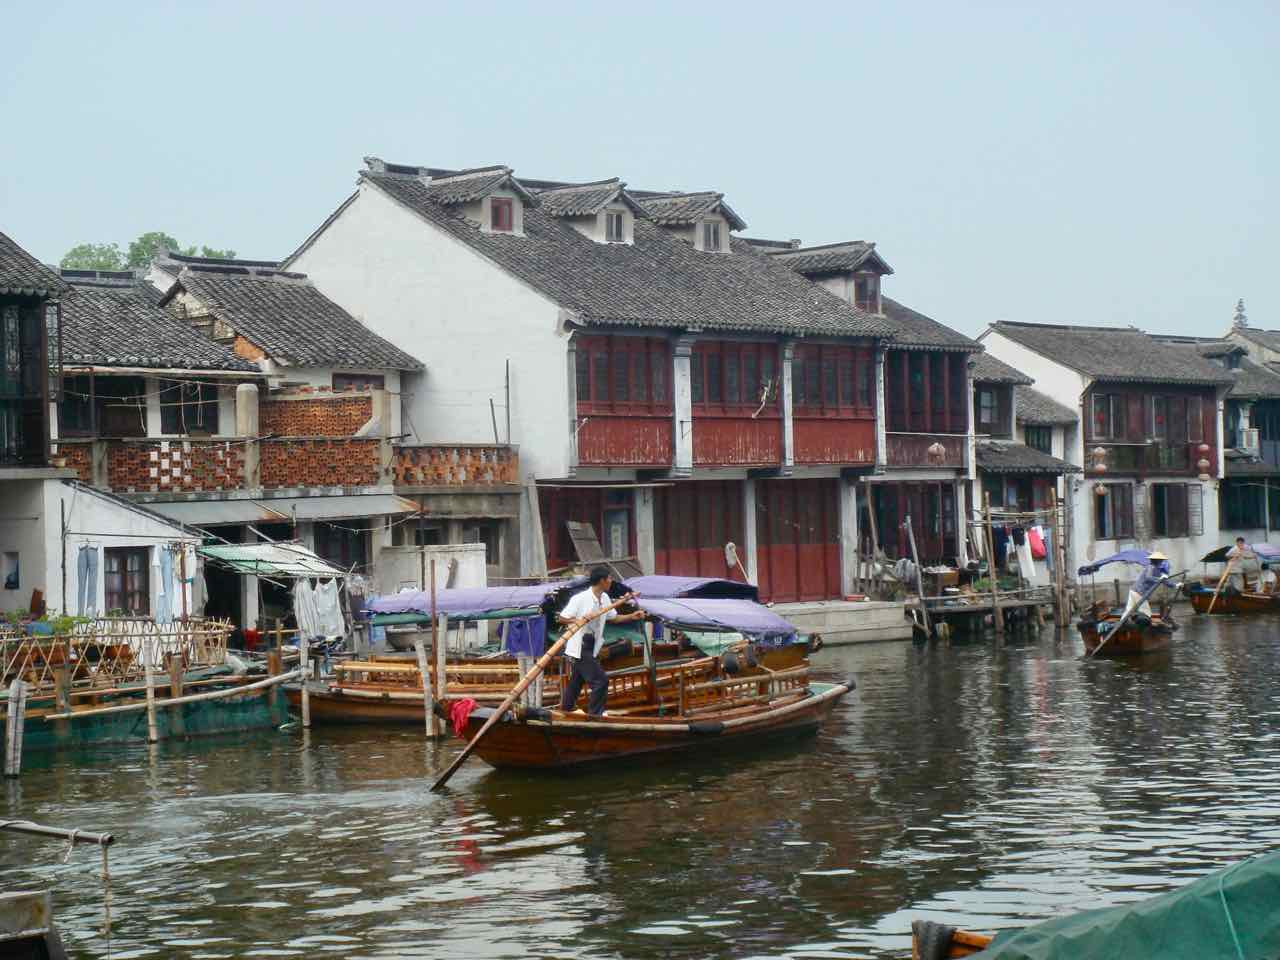 China canal town Zhouzhuang